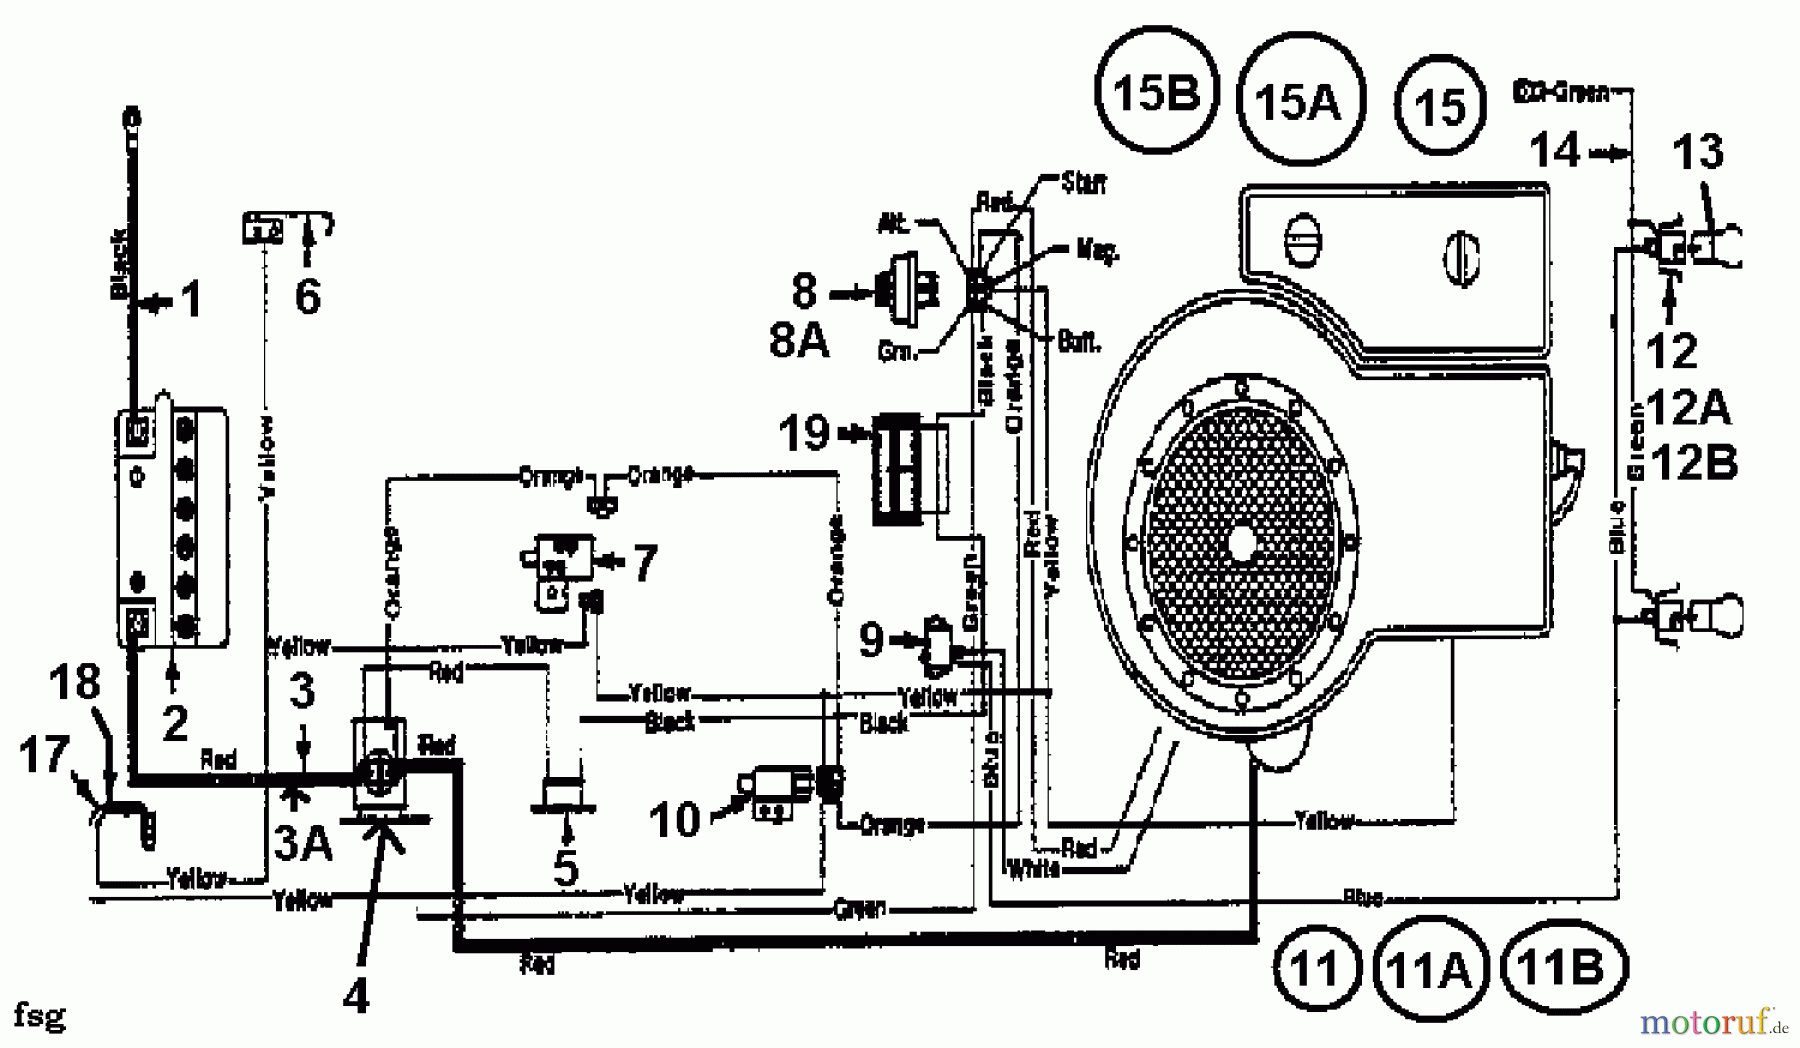  Gardol Tracteurs de pelouse 12/36 133I471E668  (1993) Plan électrique cylindre simple